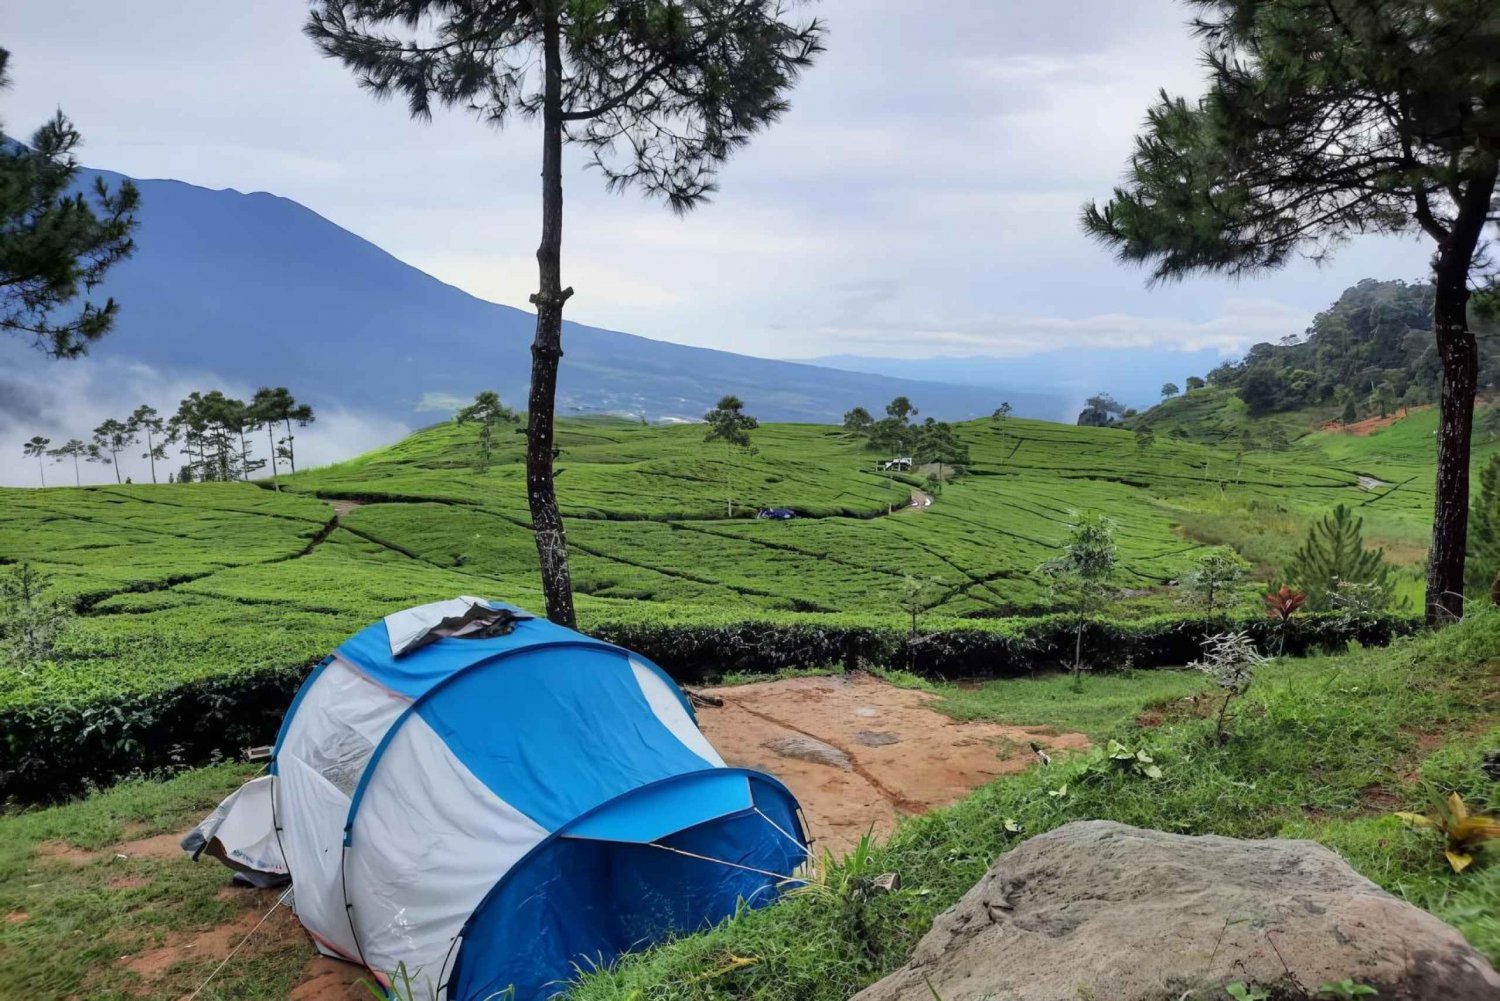 Jakarta : Foss, campingplass, vulkan 3 dager og 2 netter